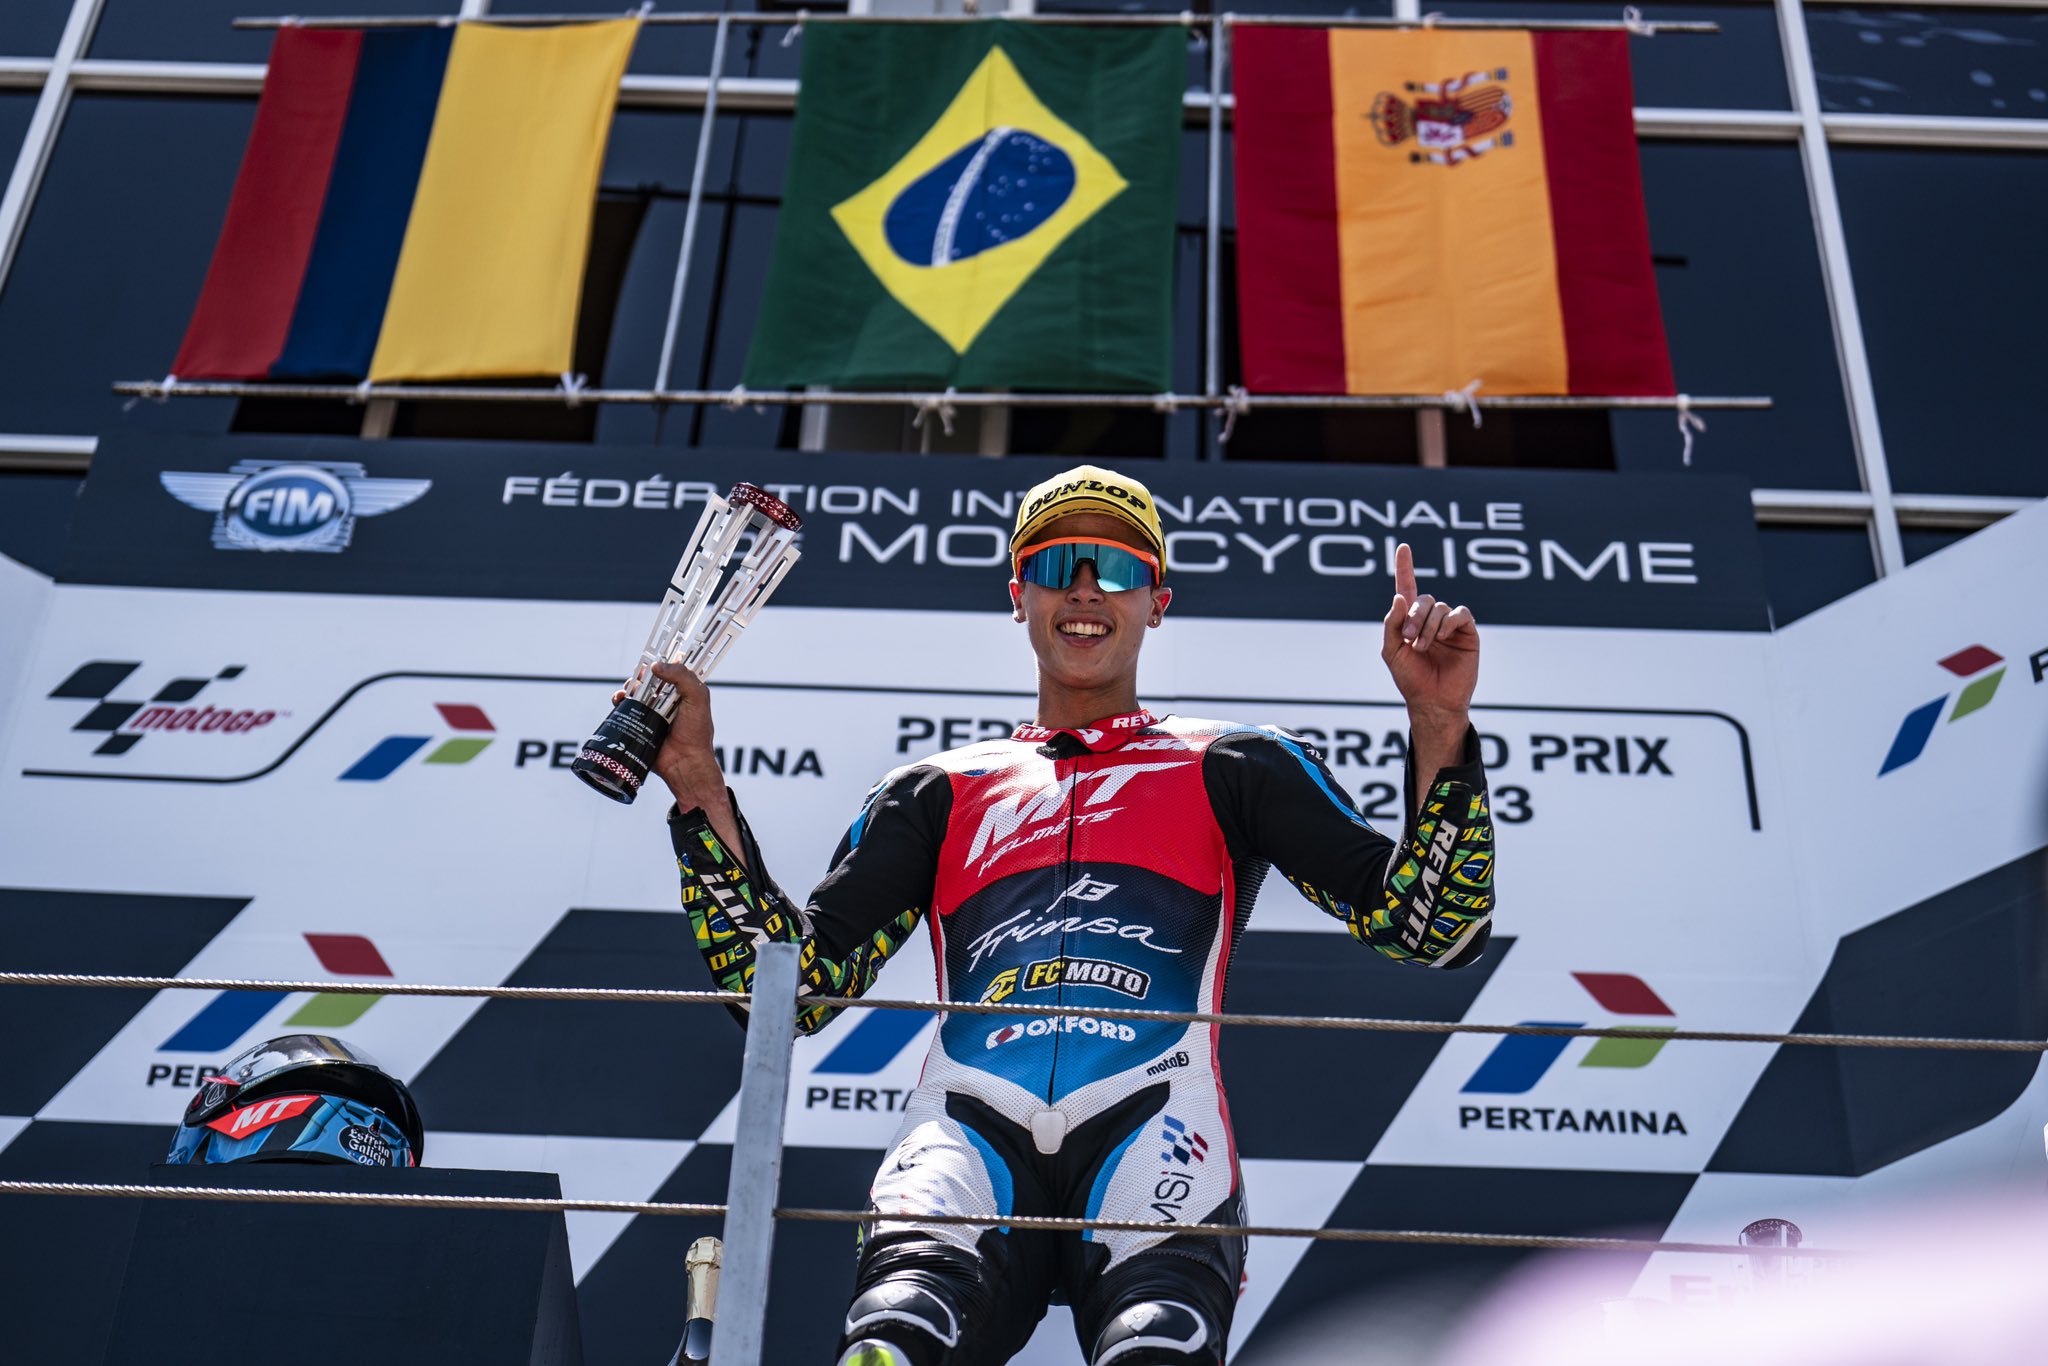 Diogo Moreira celebra vitória na Moto3 na Indonésia: “Finalmente ela chegou”